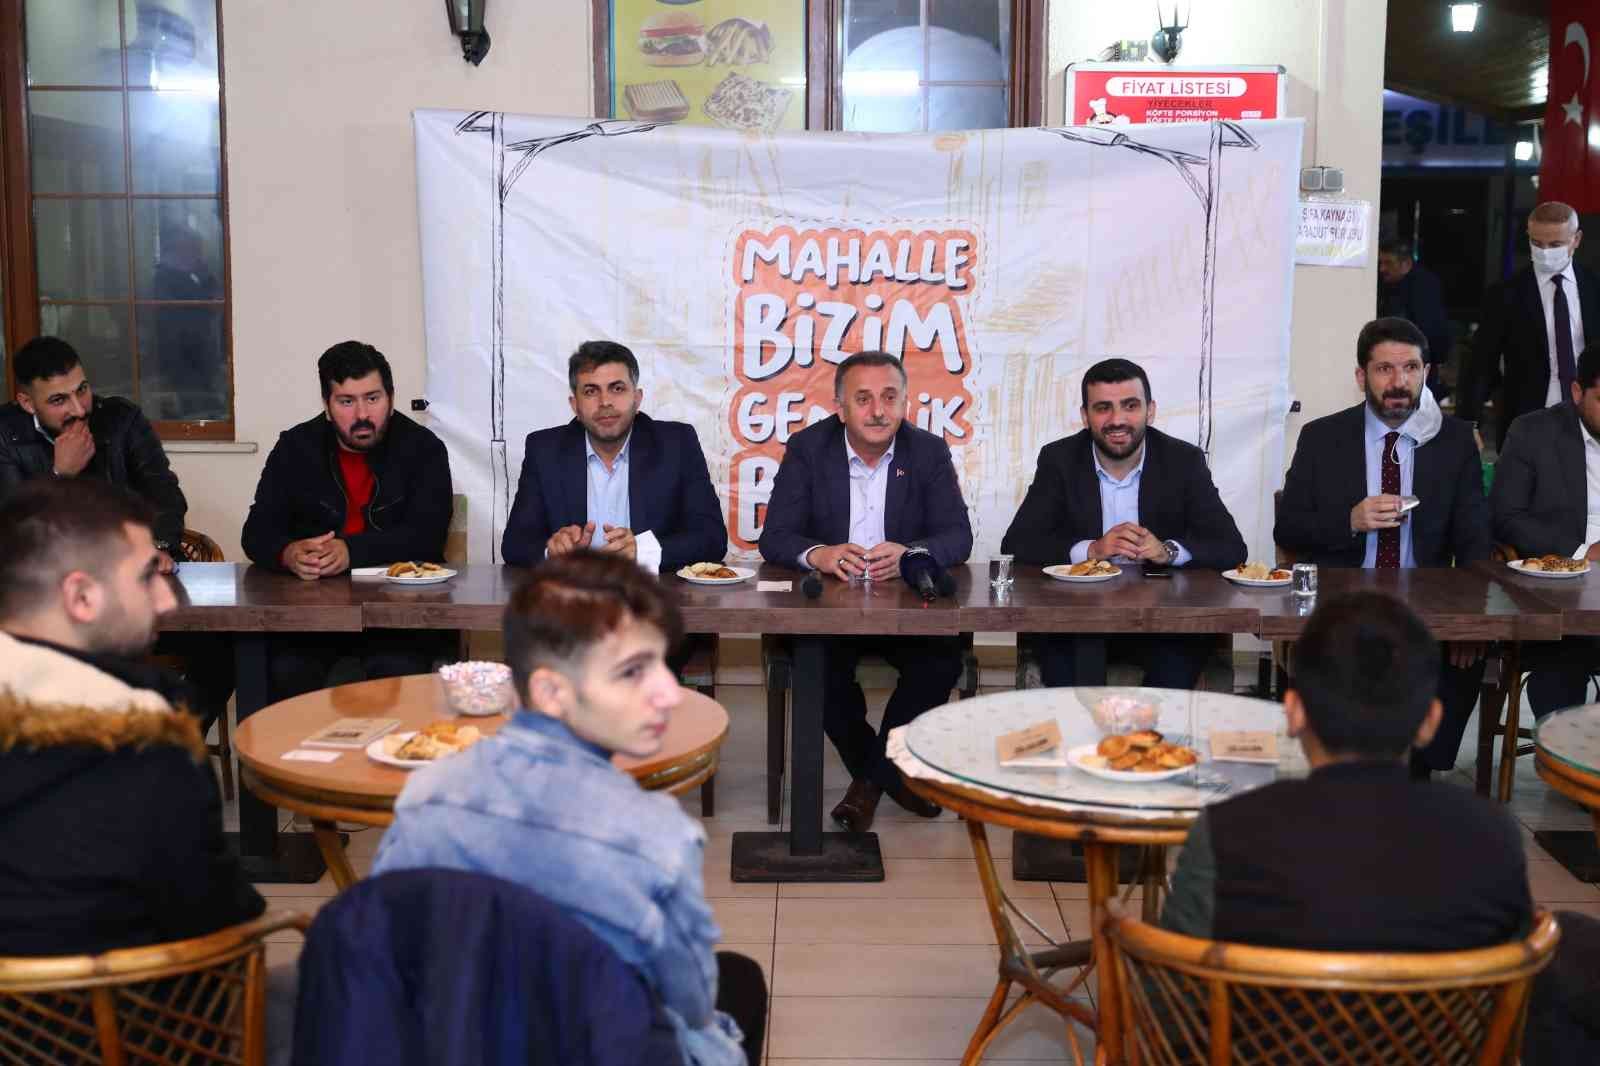 Başkan Çağırıcı: “Z kuşağı yok, inançlı gençlik var” #istanbul